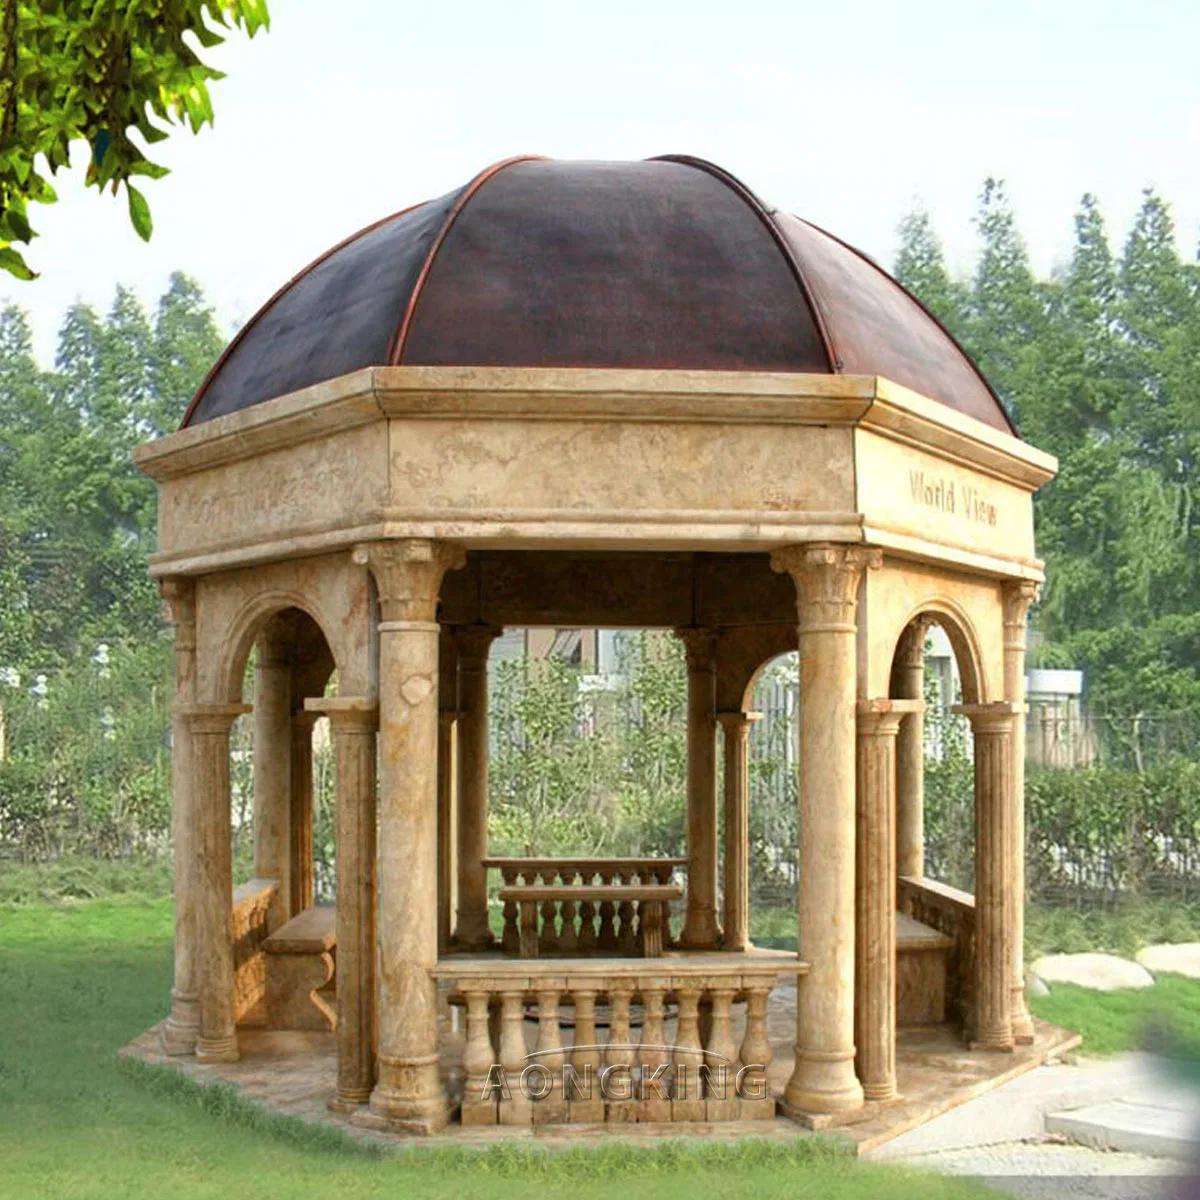 Großer Pavillon aus weißem Stein mit runden römischen Säulen im Freien